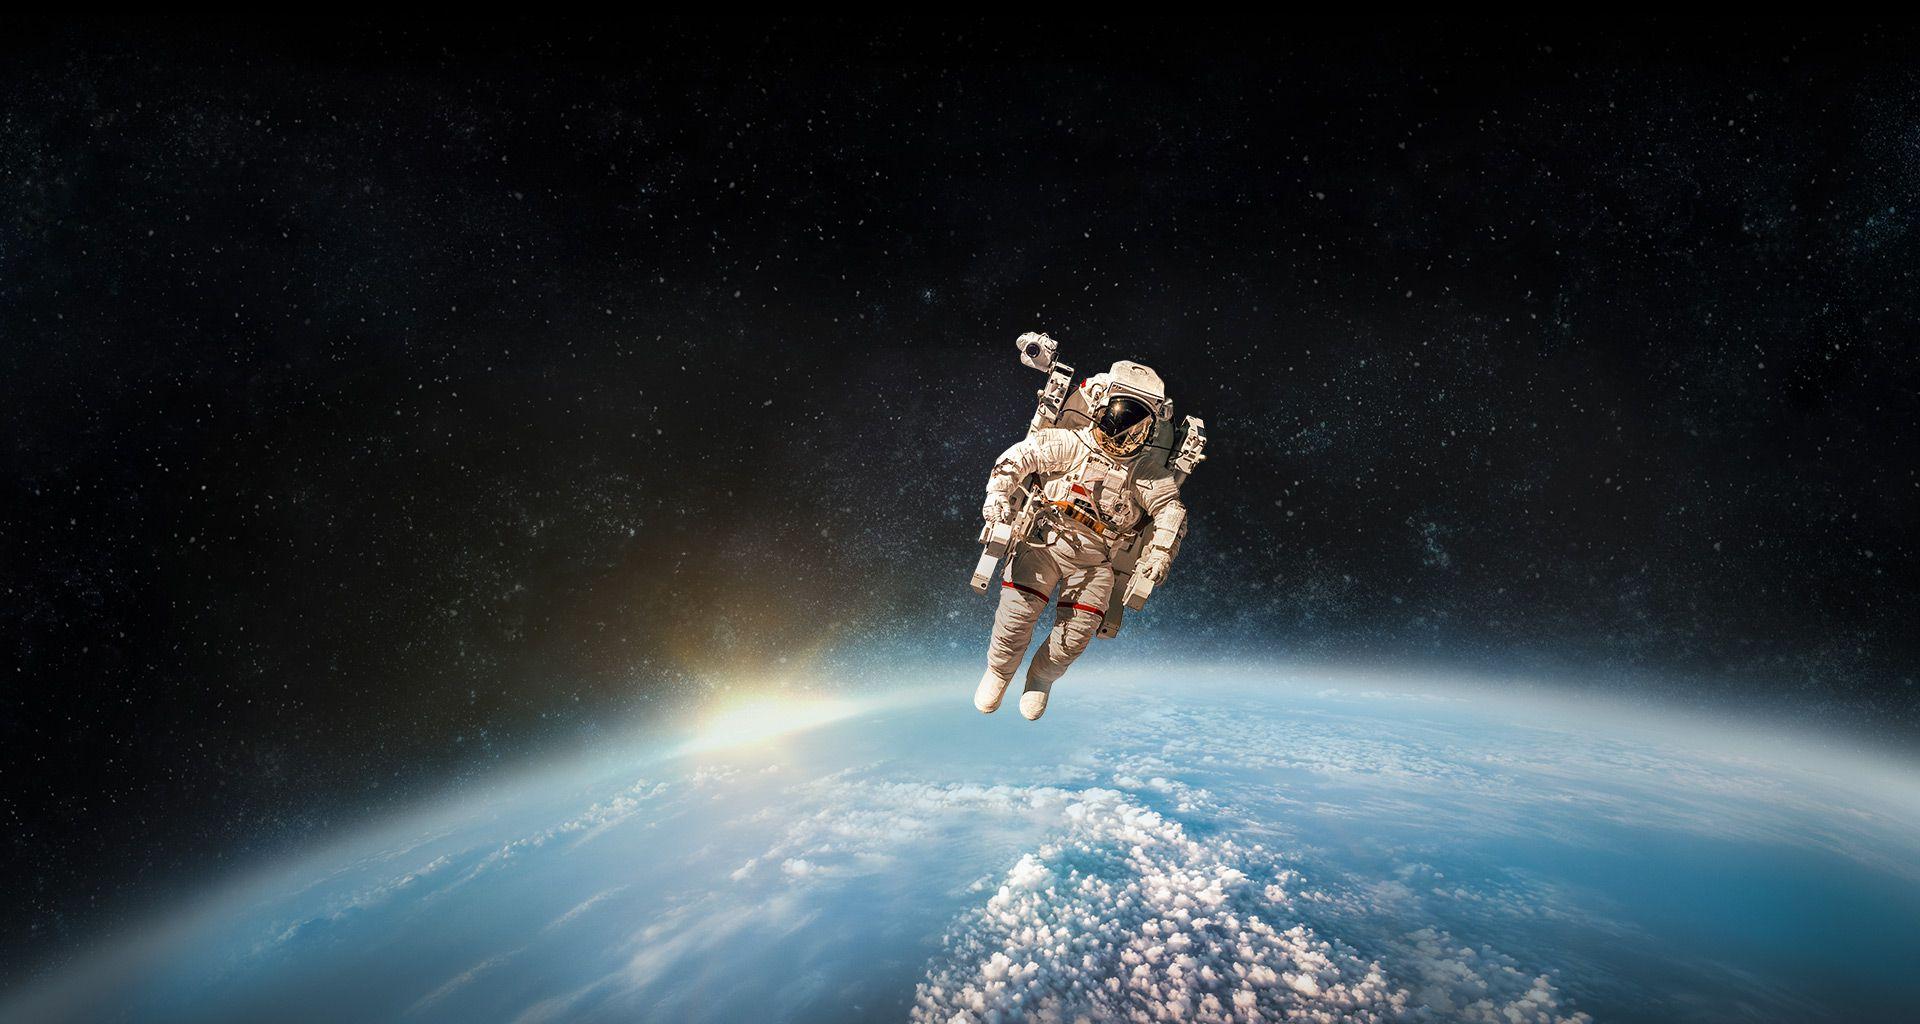 Astronaut HD Wallpapers Free download  PixelsTalkNet